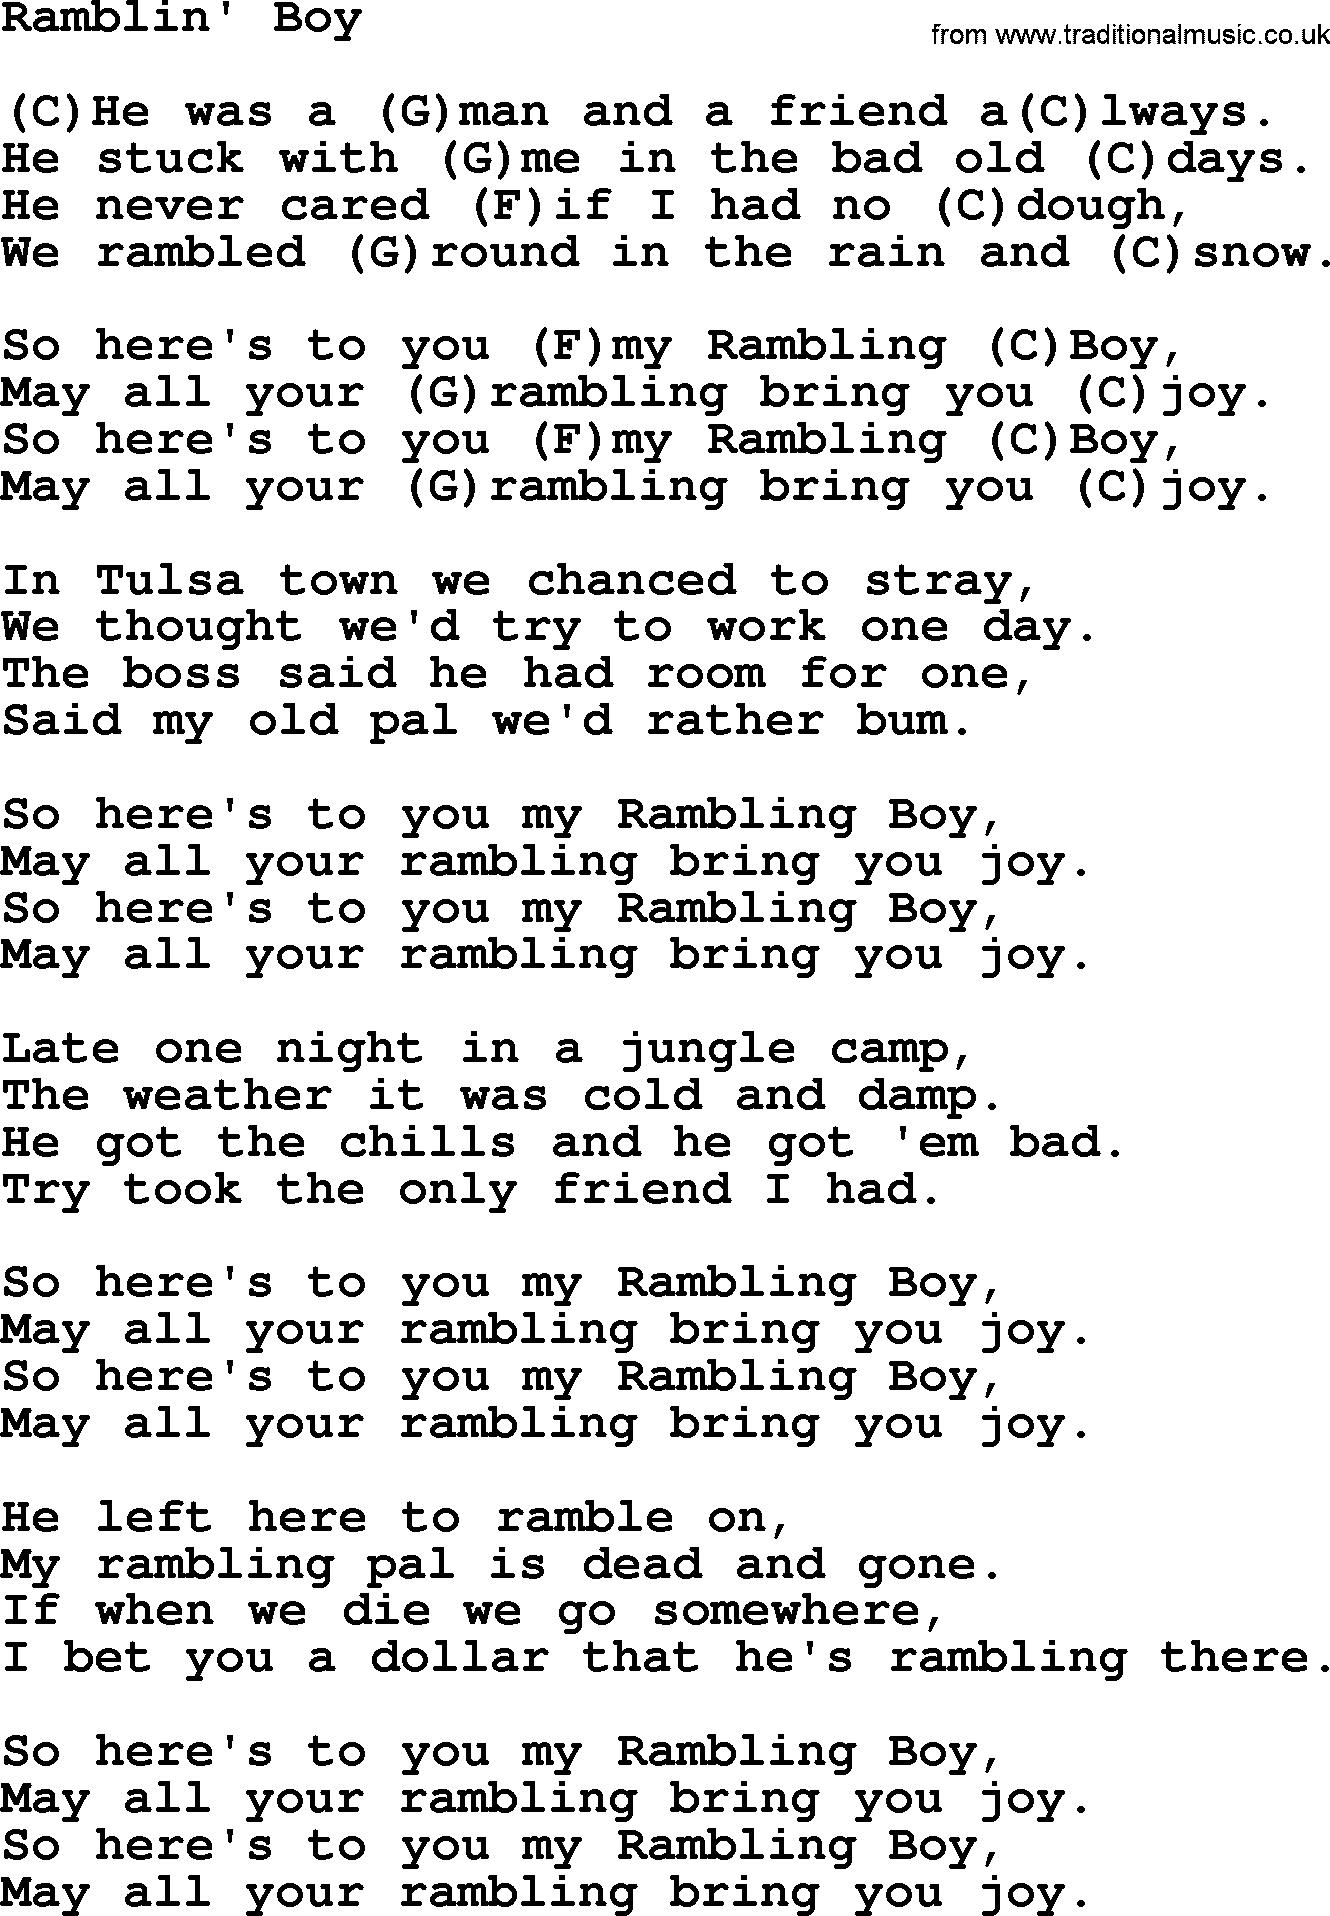 Tom Paxton song: Ramblin' Boy, lyrics and chords